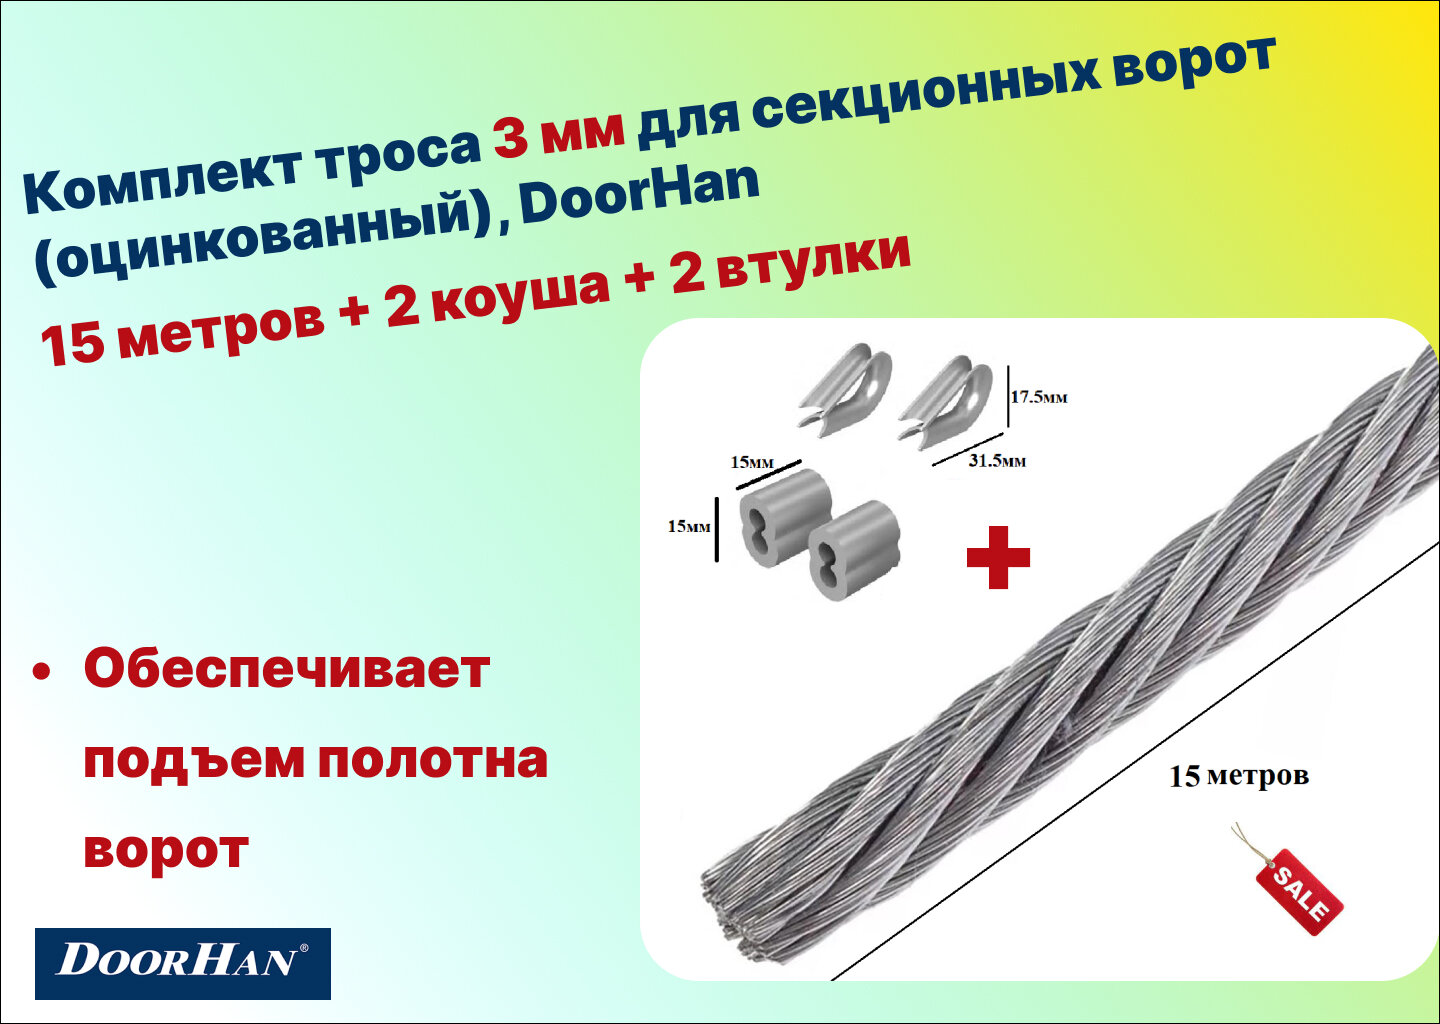 Комплект троса 3 мм для секционных ворот (оцинкованный) 15 метров + 2 коуша + 2 втулки DoorHan